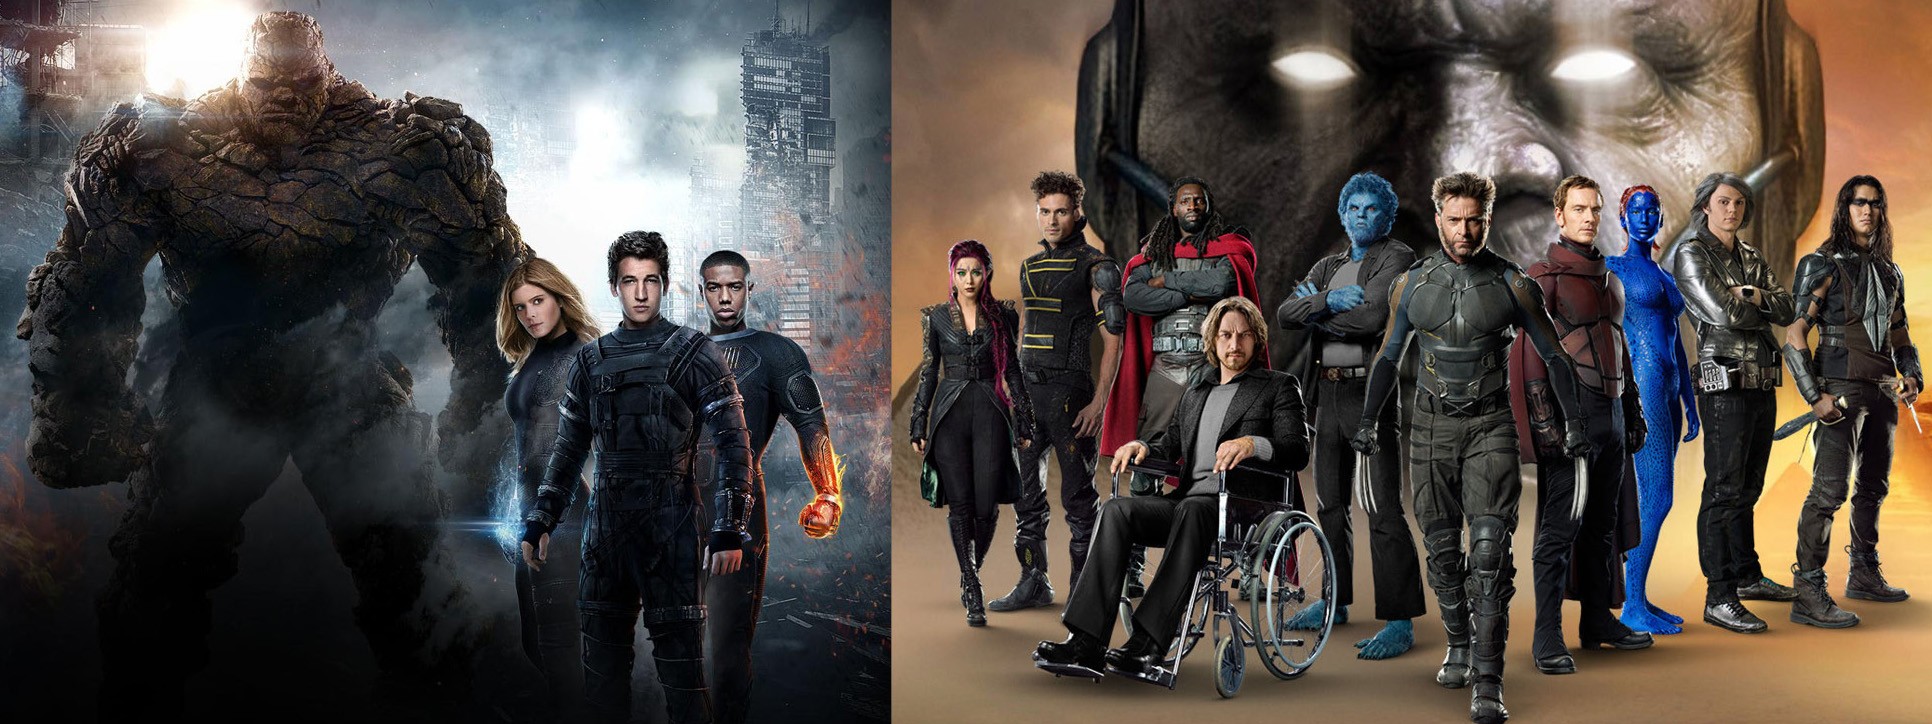 'Quarteto Fantástico' (2015) e 'X-Men: Apocalipse' (2016) (Foto: Divulgação)